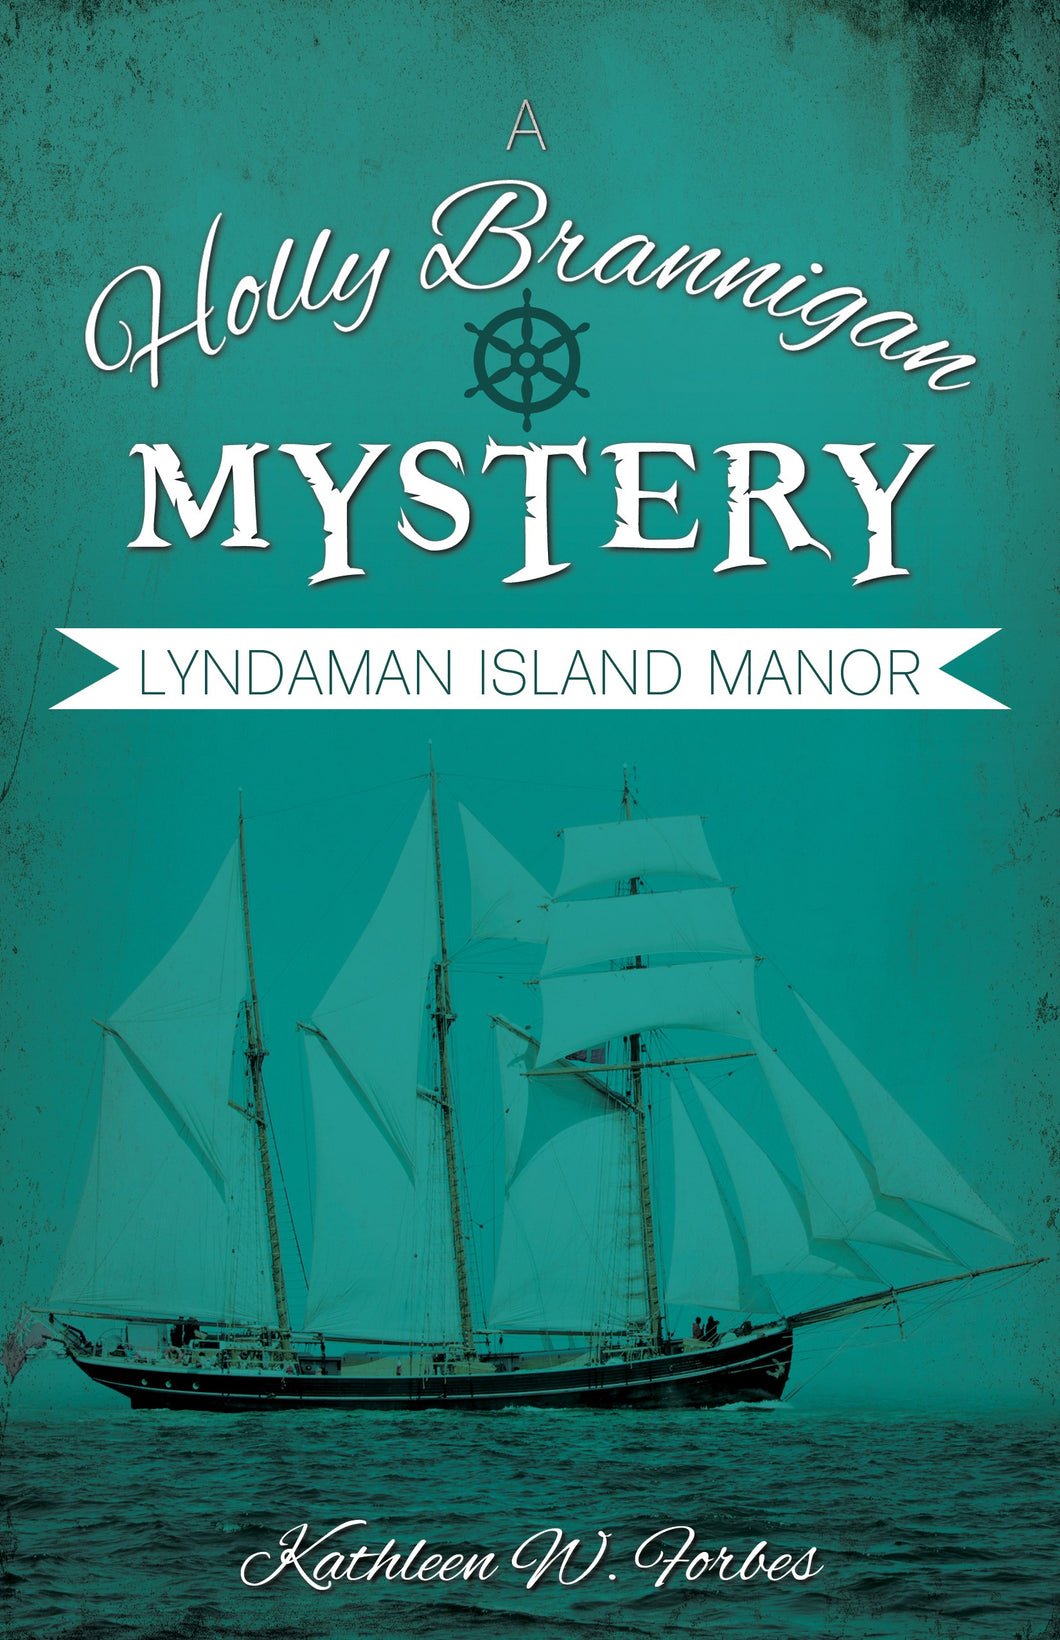 Lyndaman Island Manor (Holly Brannigan Mystery #4)